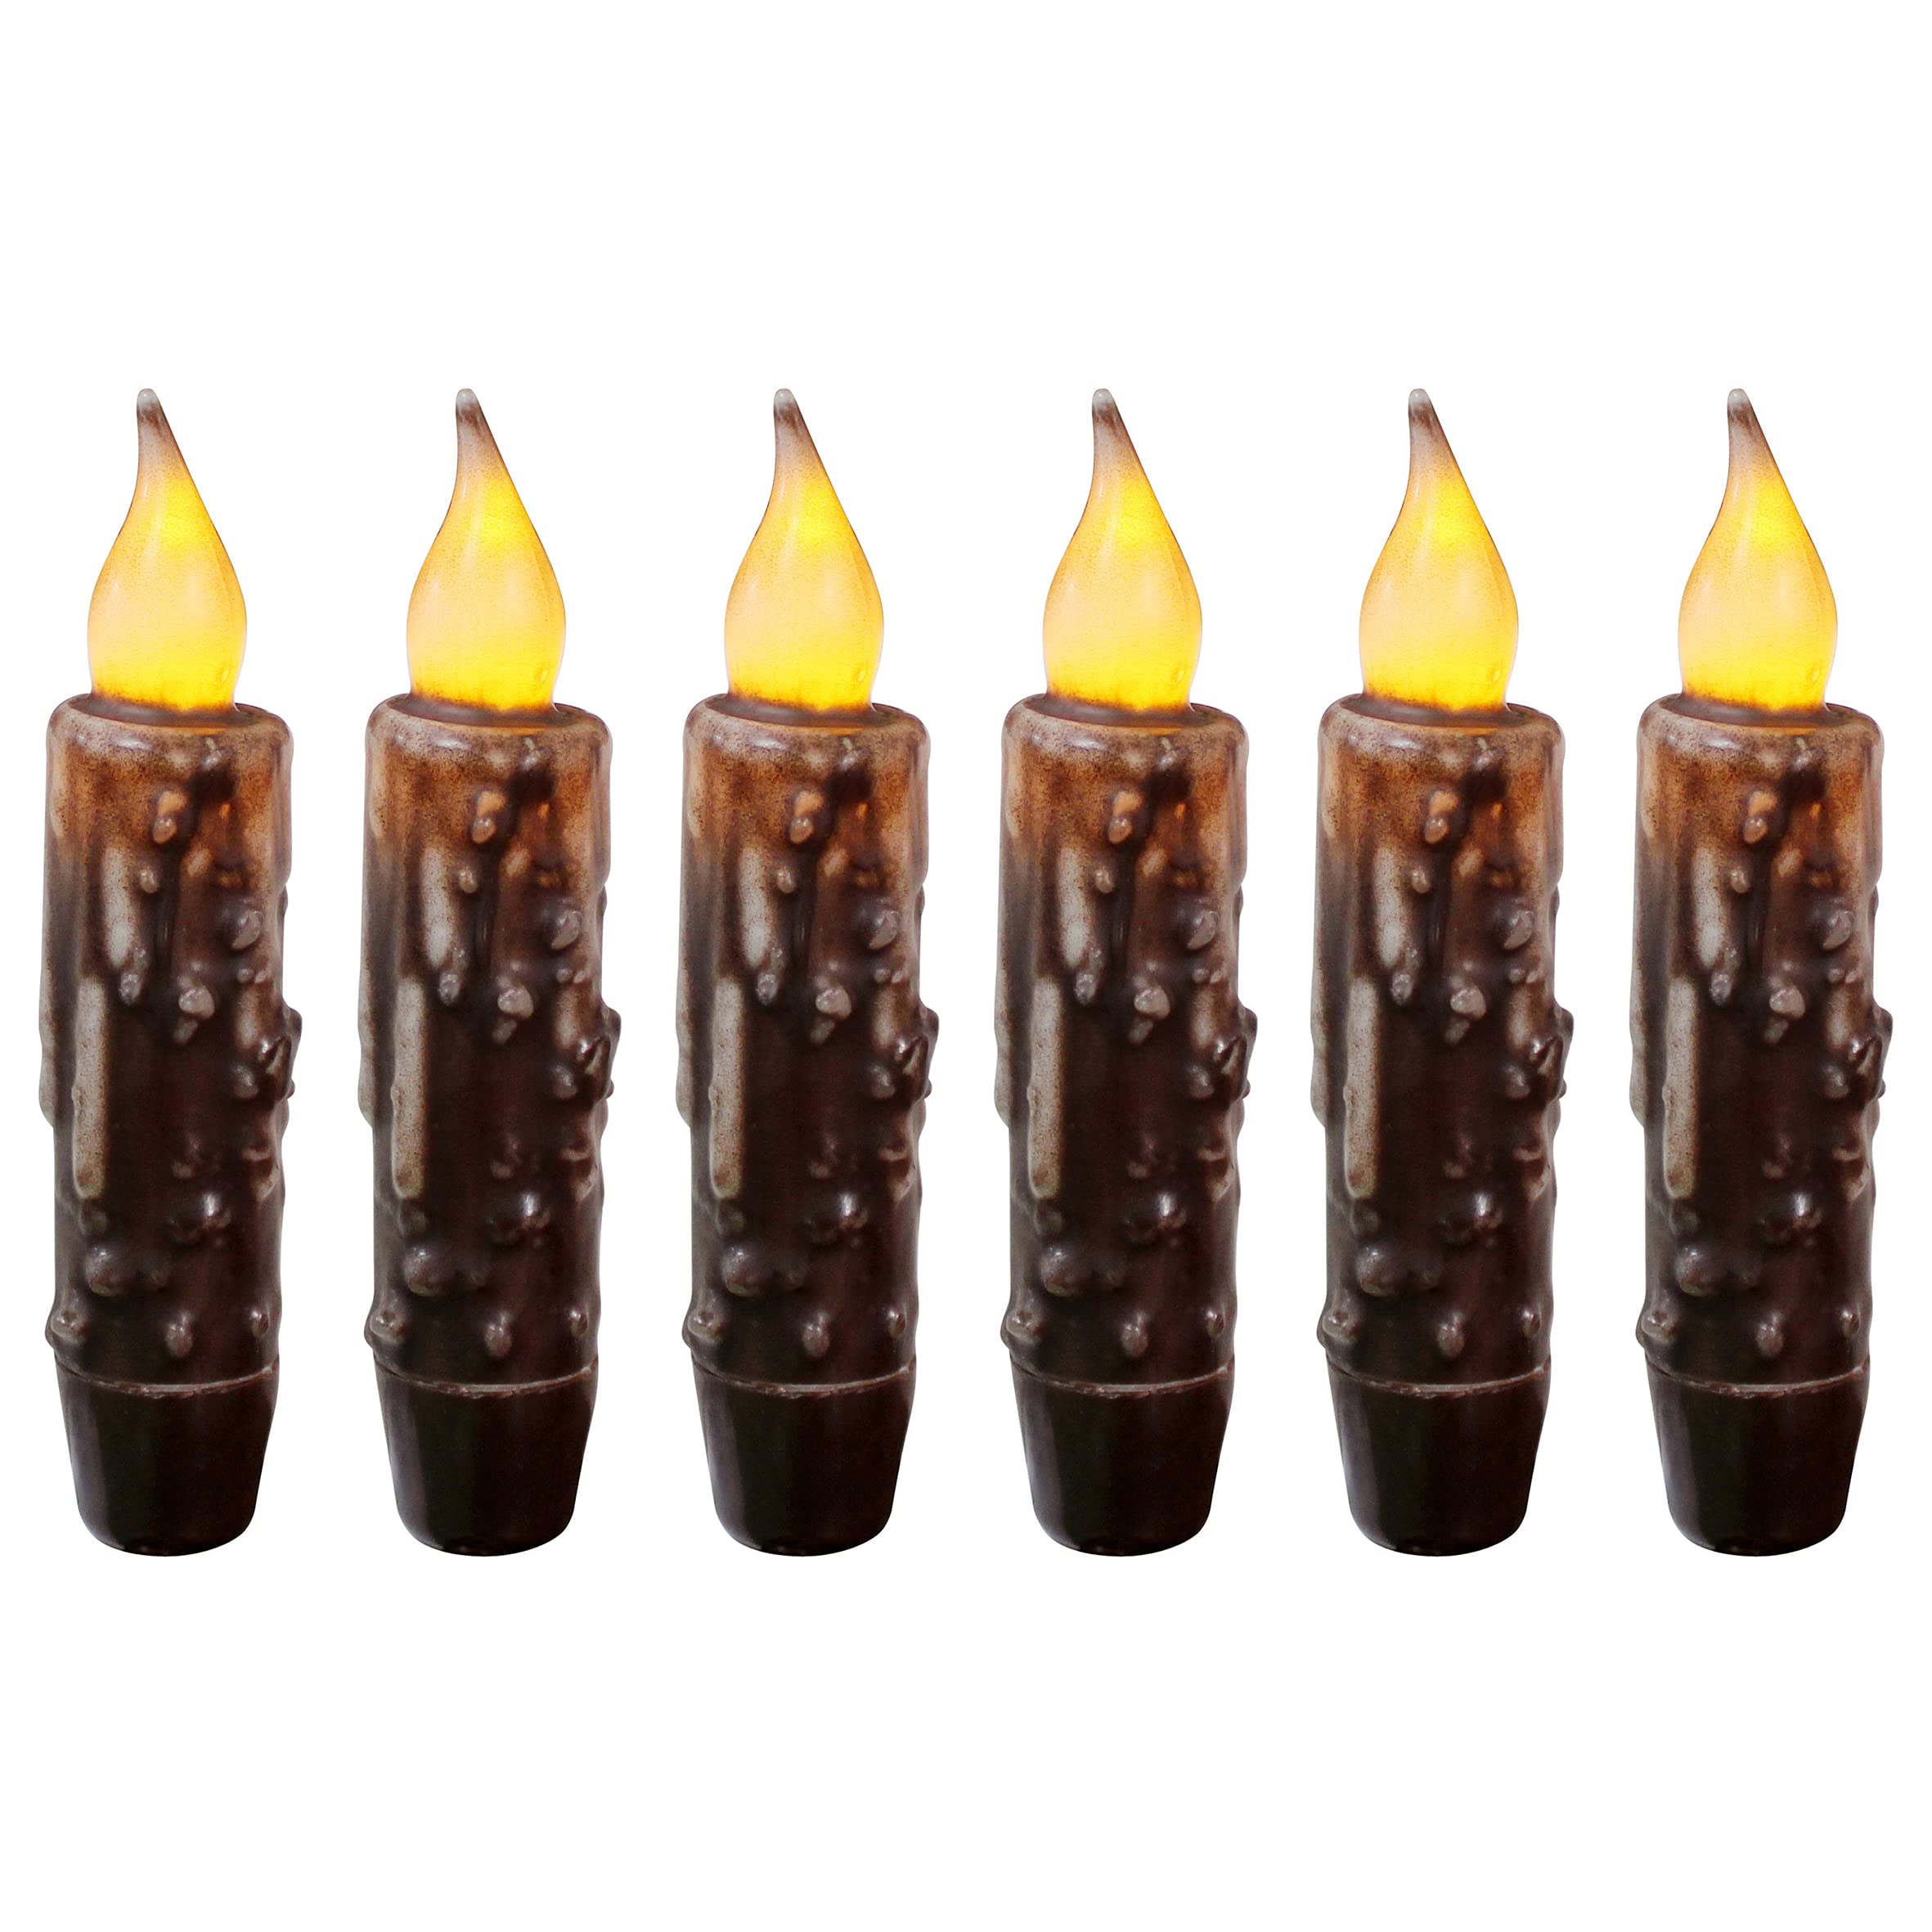 CVHOMEDECO. Echtwachs handgetauchte batteriebetriebene LED-Timer-Kerzen-Kerzen Rustikale Primitive flammenlose Lichter-Dekor, 12 cm, Brwon, 6 Stück in einer Packung